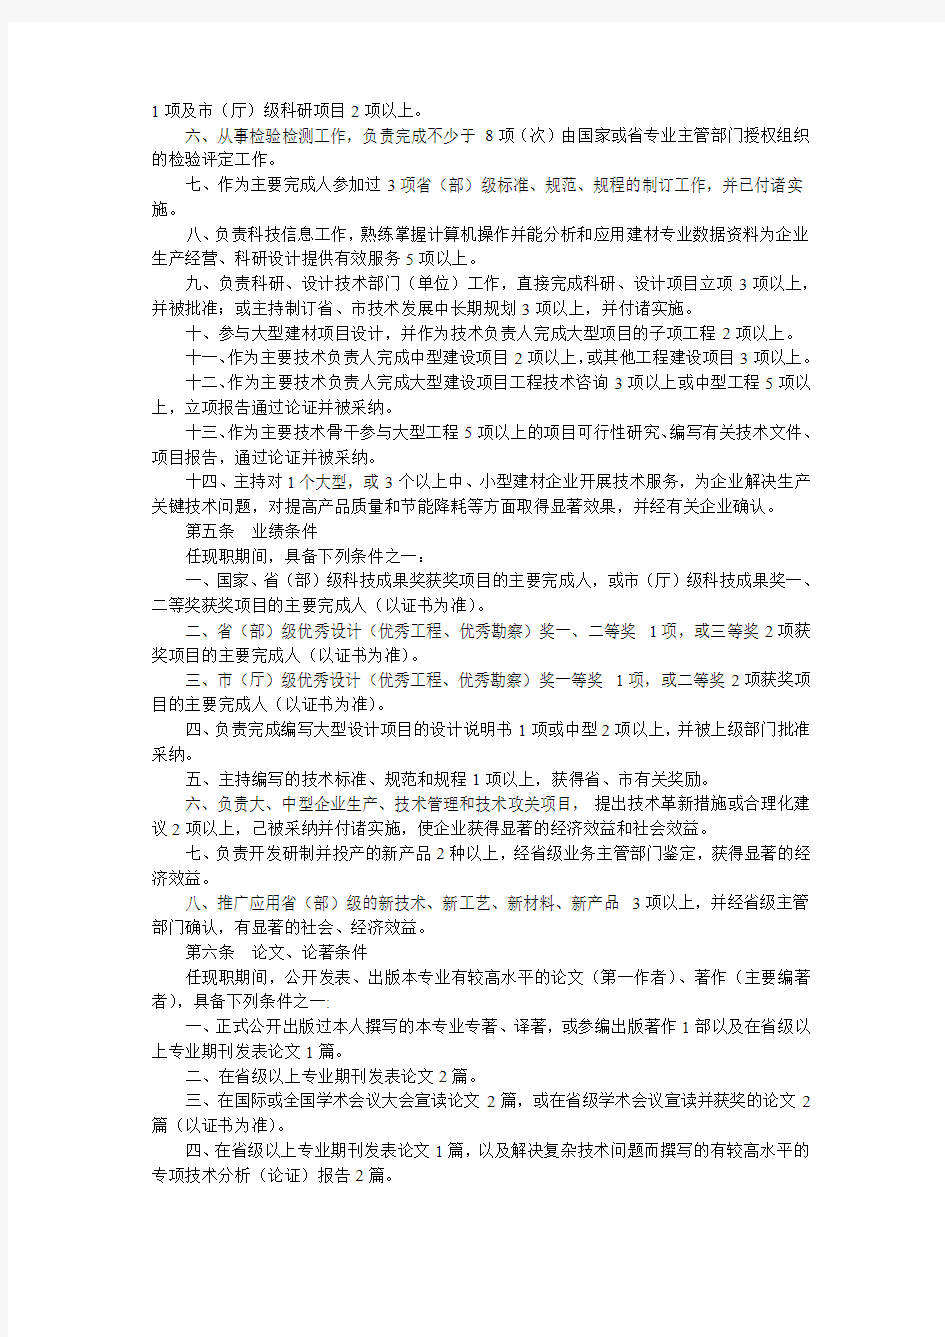 赣人发[2005]10号江西省建筑材料专业高级工程师资格条件